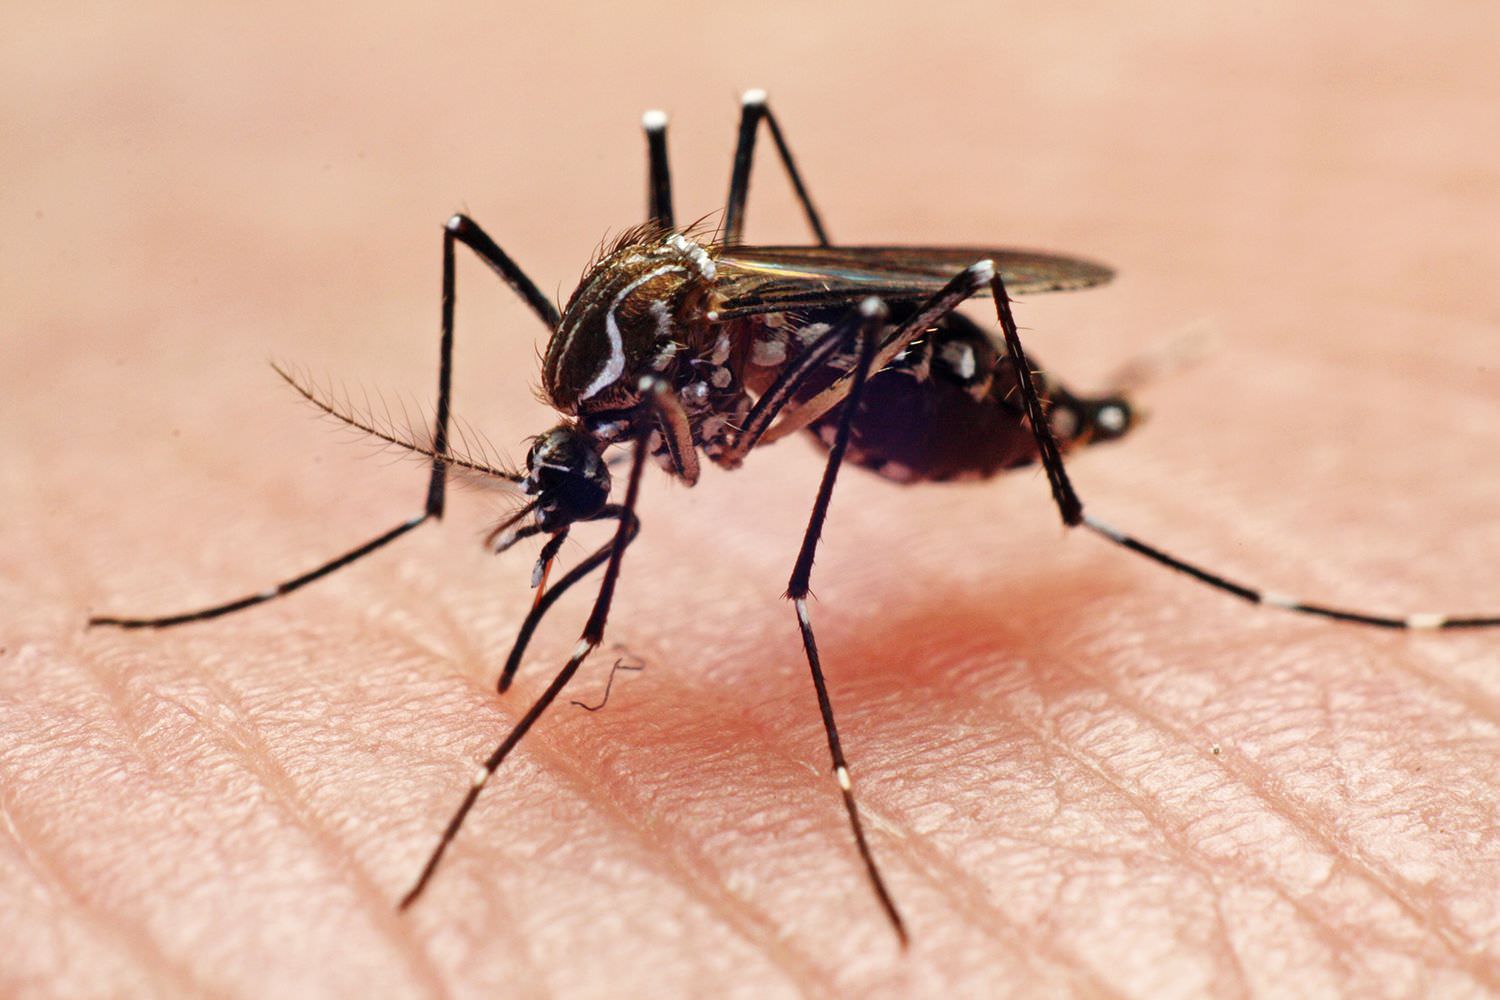 Ministro da Saúde manifesta preocupação com a dengue no verão